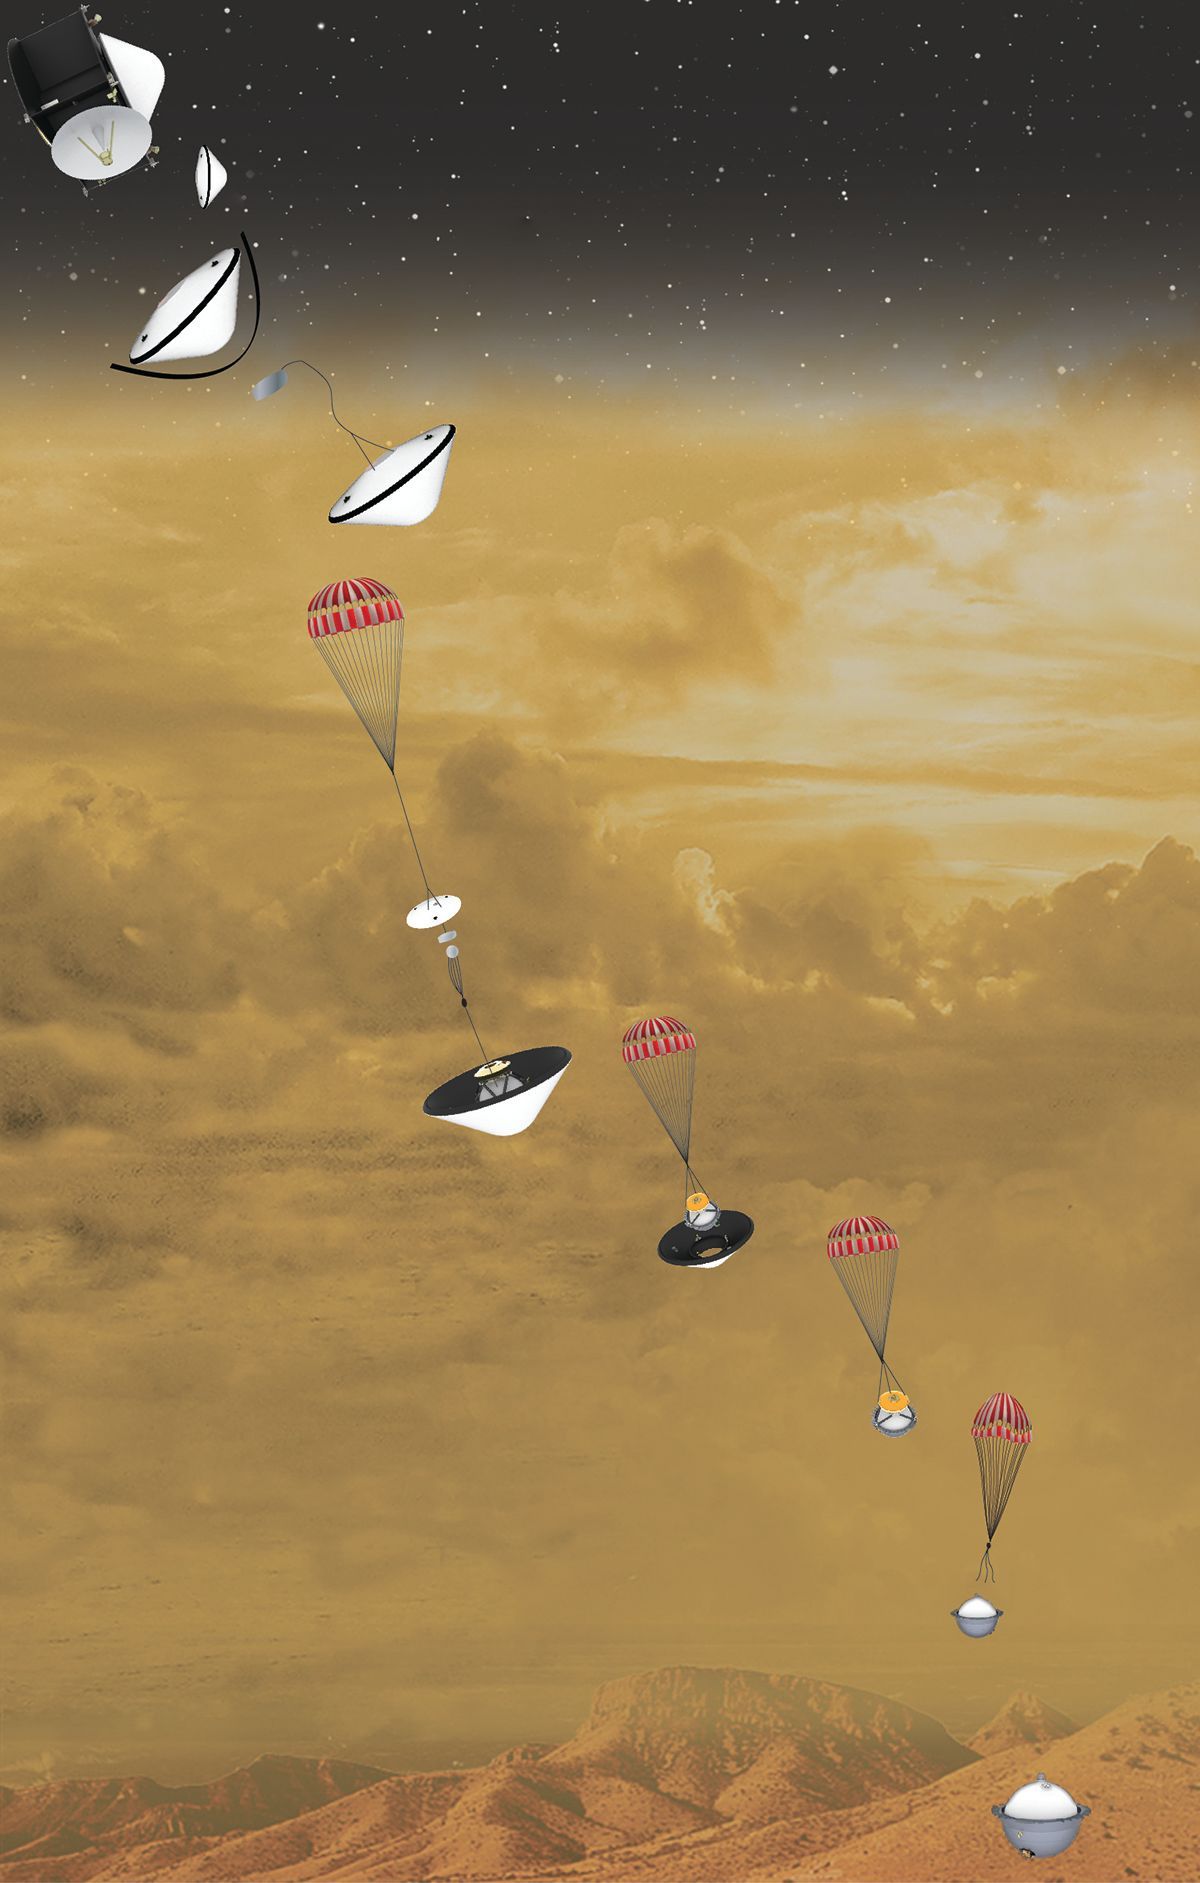 2021 beschloss die NASA, die Venus wieder Ende der 2020er-Jahre zu besuchen. Dabei plant sie, eine Kapsel zum Boden zu schicken, die hochauflösende Bilder schießen und herausfinden soll, ob es dort einmal Wasser gab.